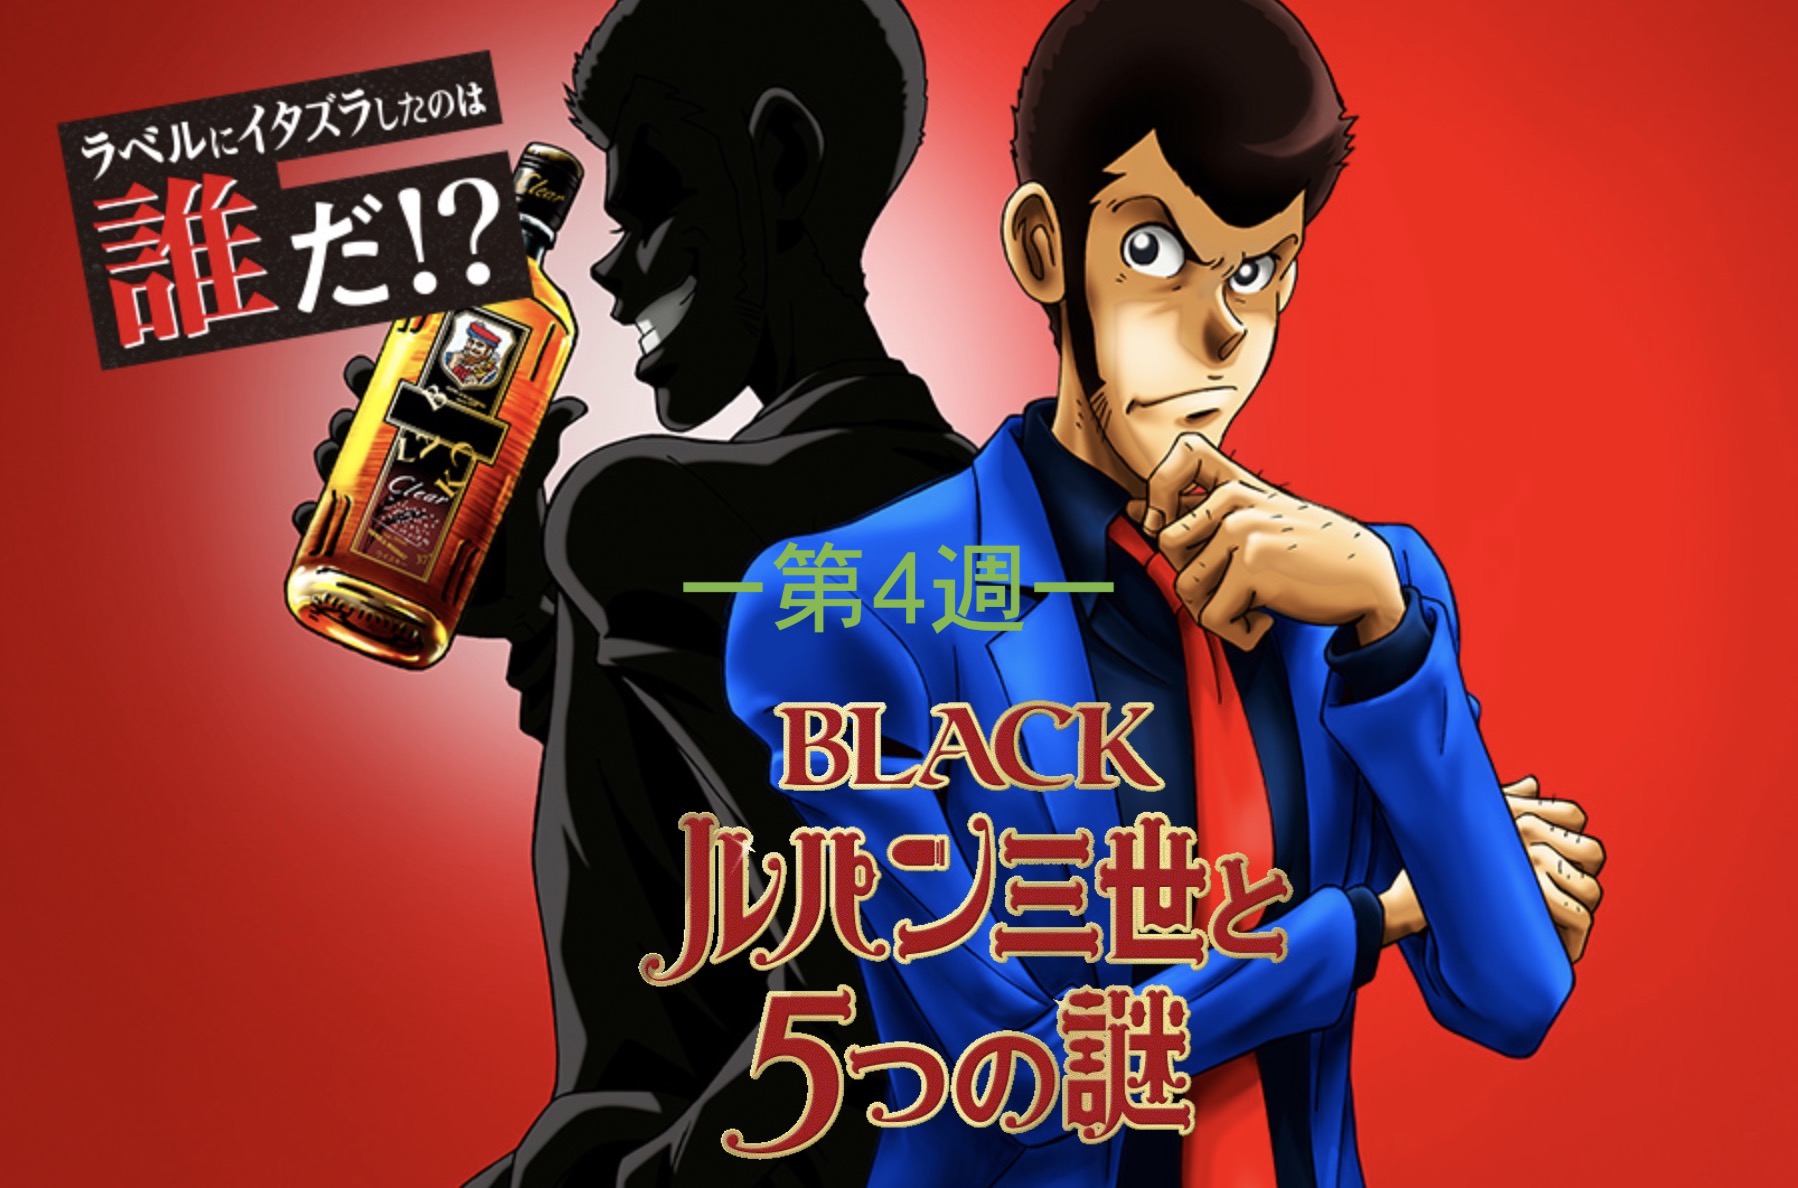 第4週 Nikka ルパン 謎解き Amazonギフト1000円分が当たるキャンペーンの謎解きを解いてみた 東京るんるん